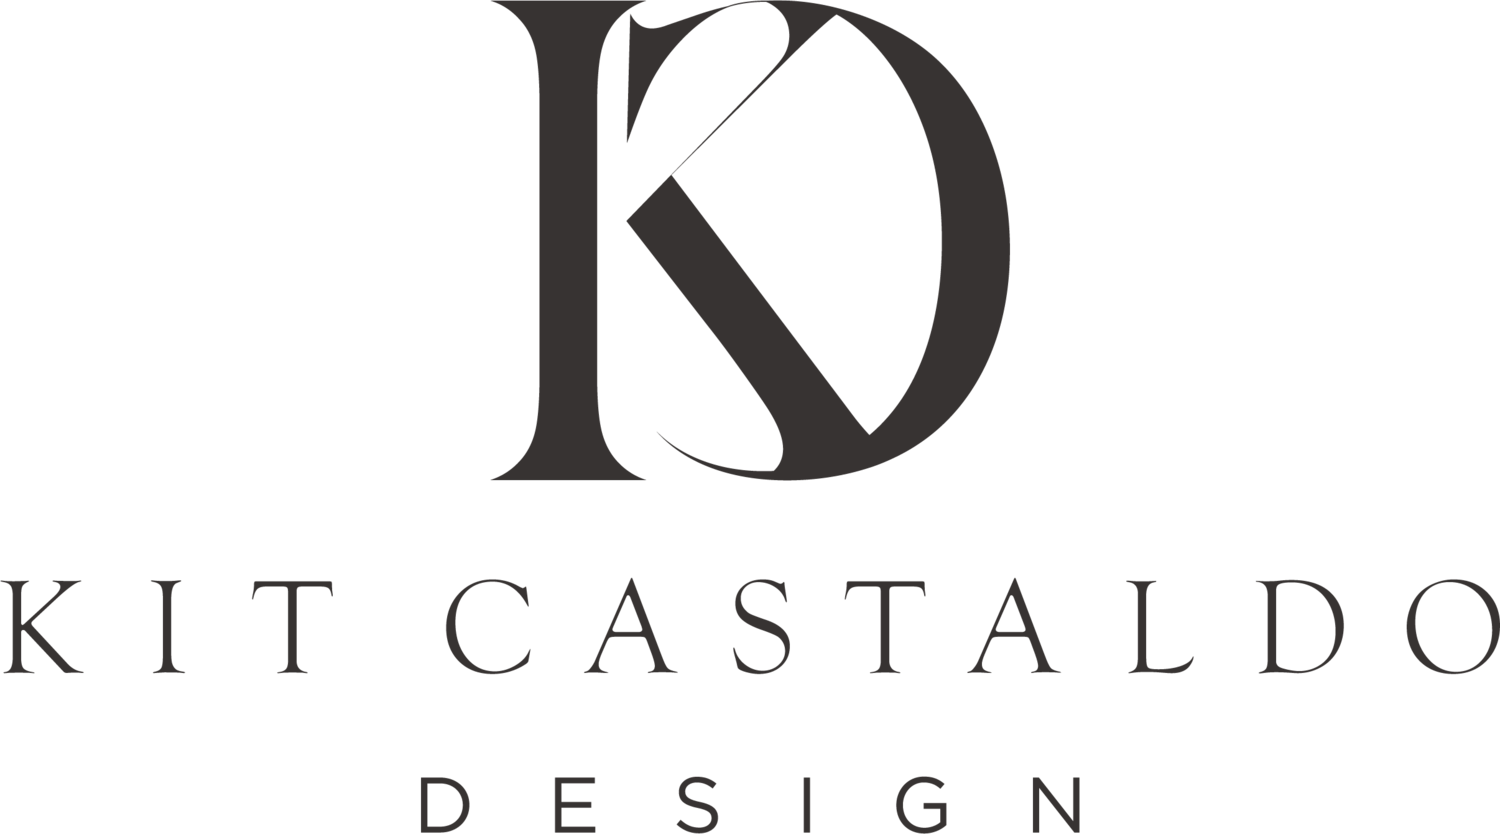 Kit Castaldo Design